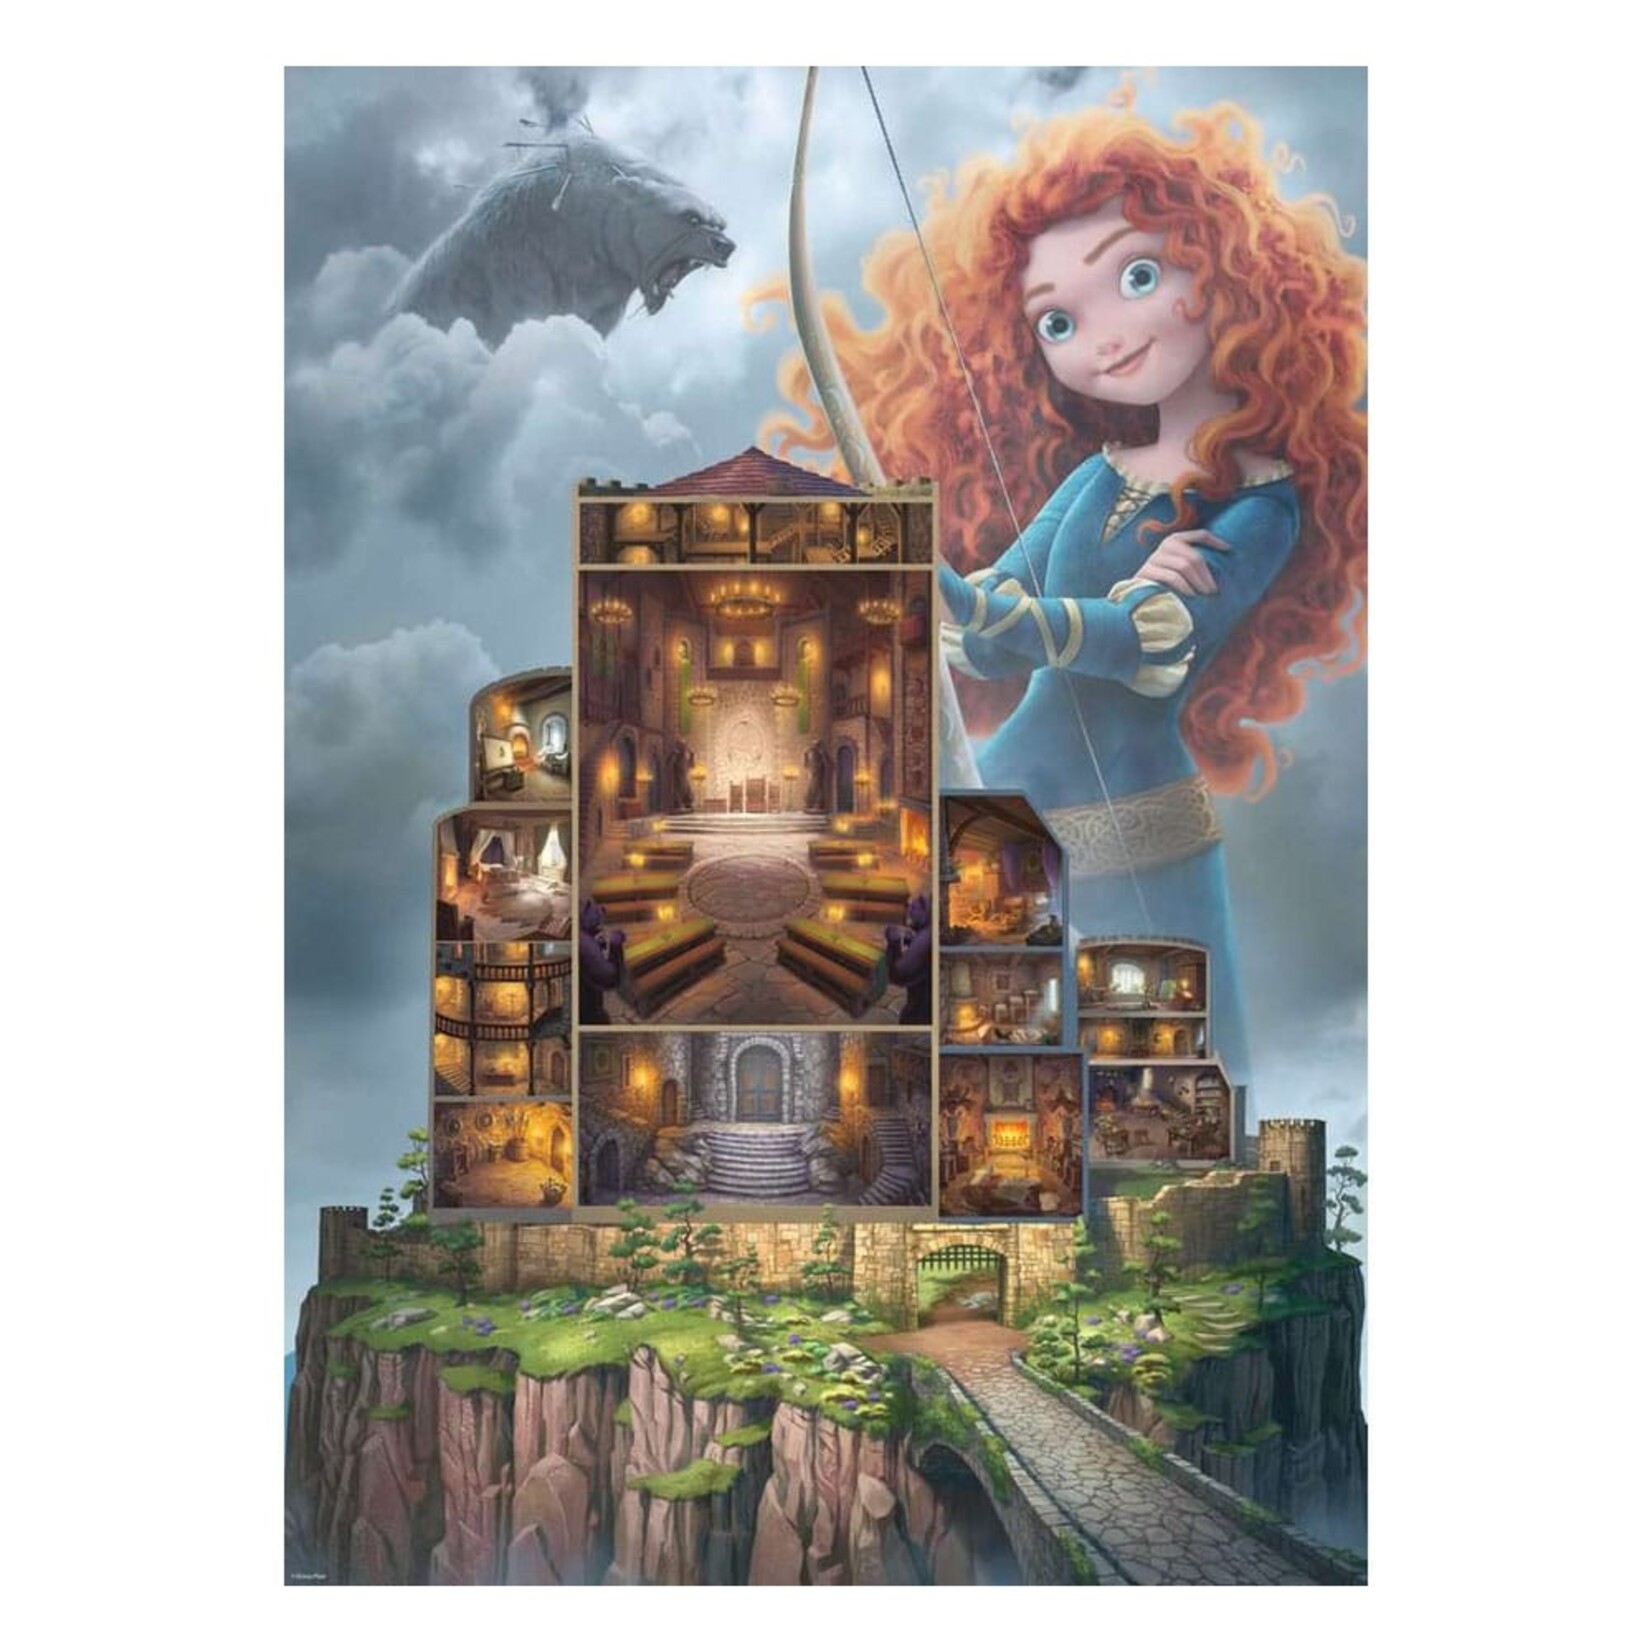 Ravensburger Ravensburger Disney Castle Collection Puzzle Merida (Brave) 1000 pcs